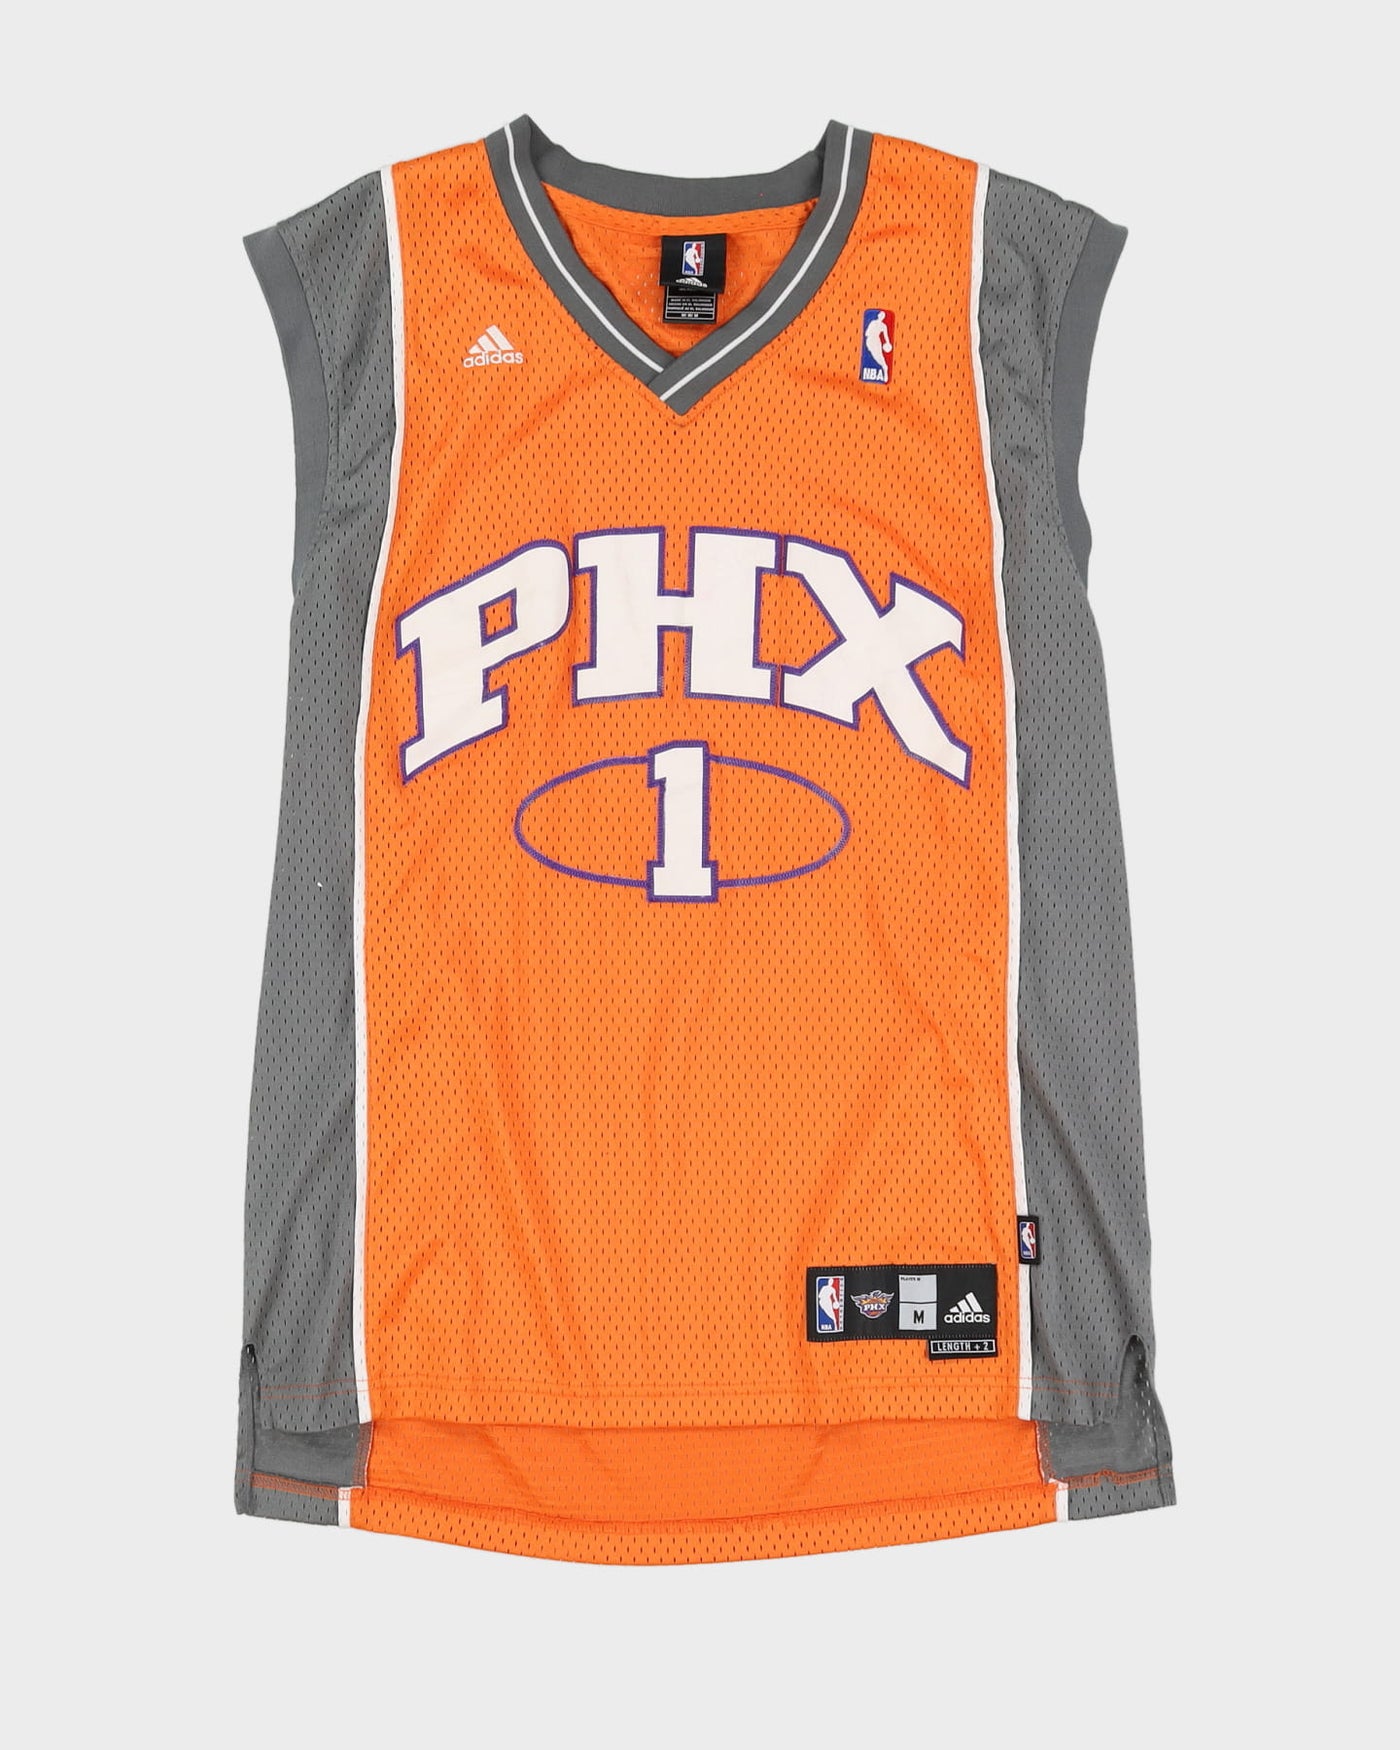 00s Amar'e Stoudemire #1 Phoenix Suns Stitched Orange / Grey NBA Basketball Jersey - M